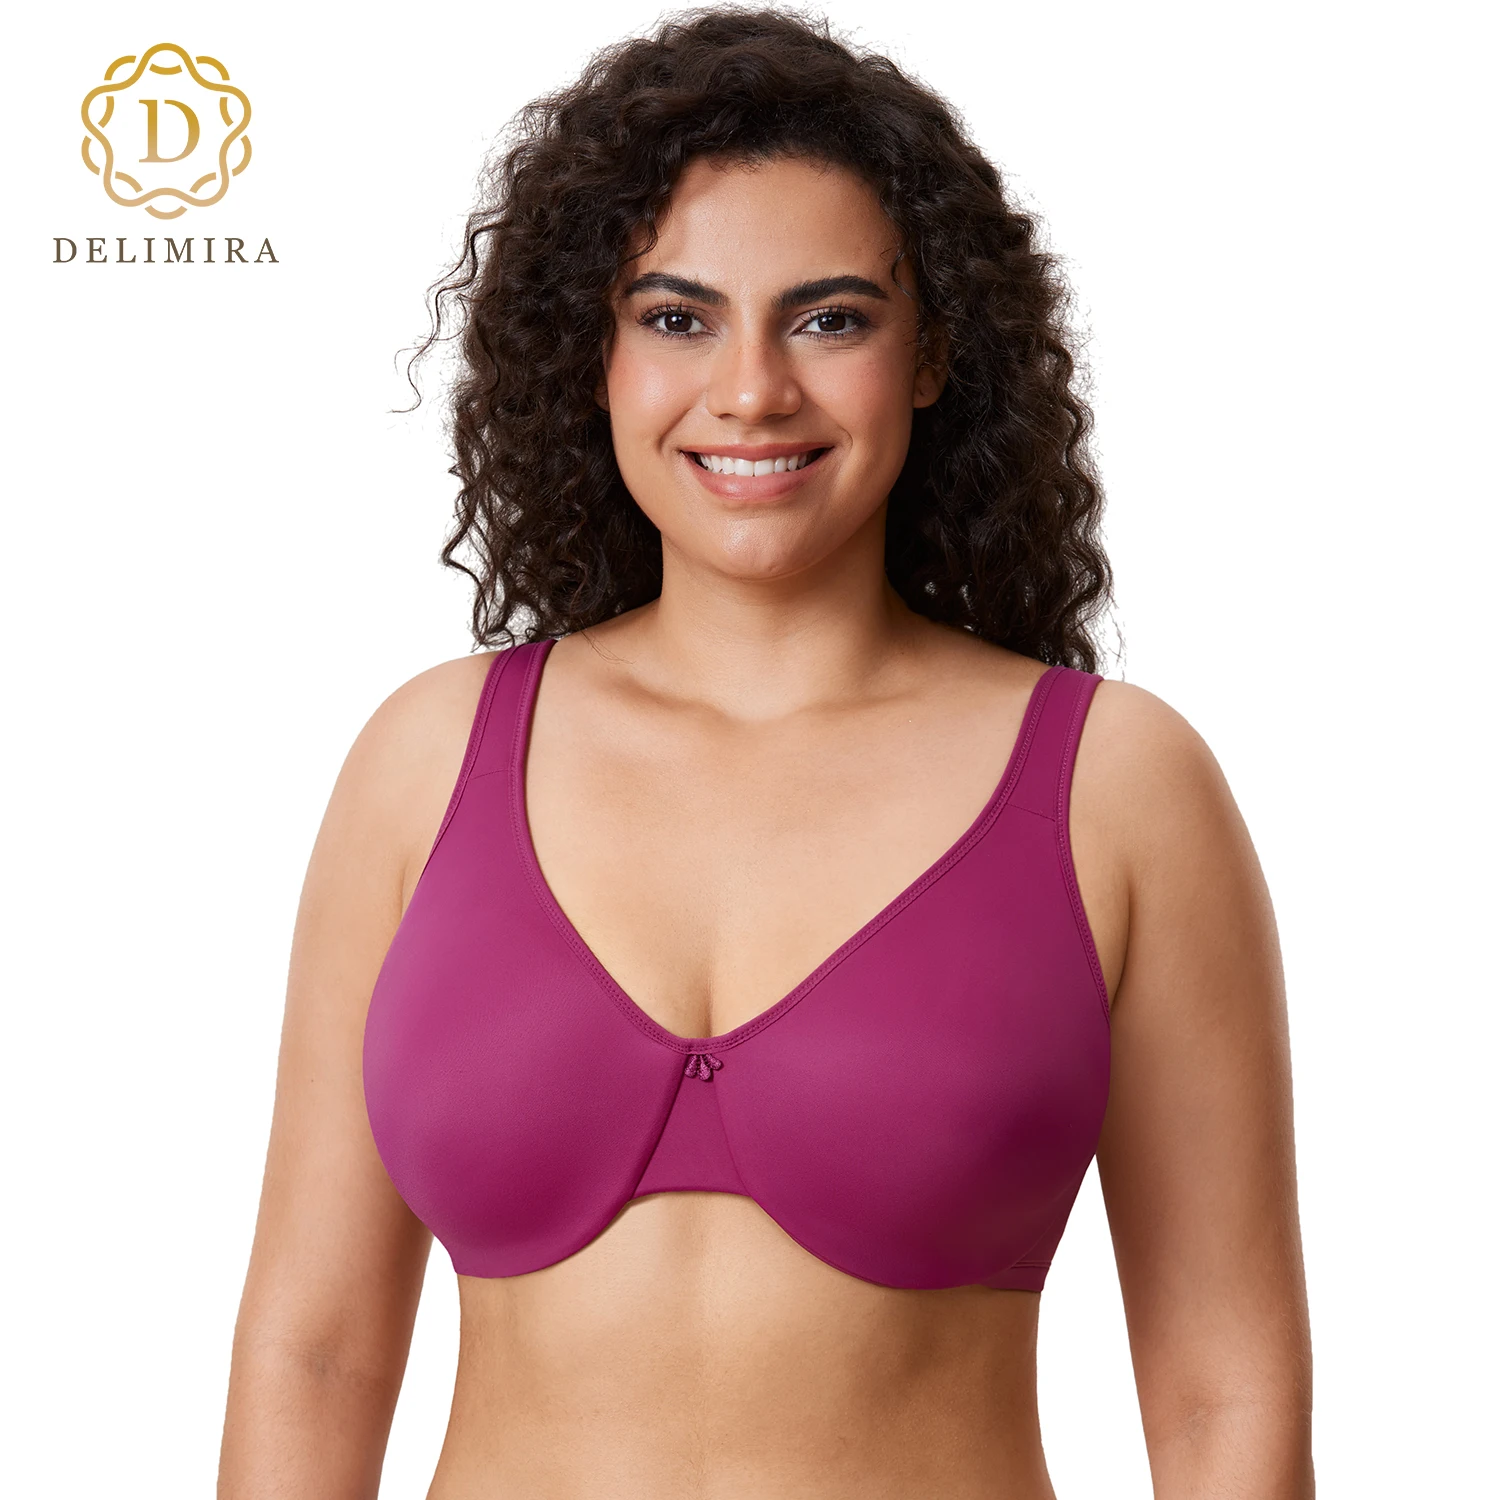 Delimira Minimizer Bra For Women Plus Size Seamless Bra Smooth Full Figure  Underwire Comfortable Brassiere D DD E F